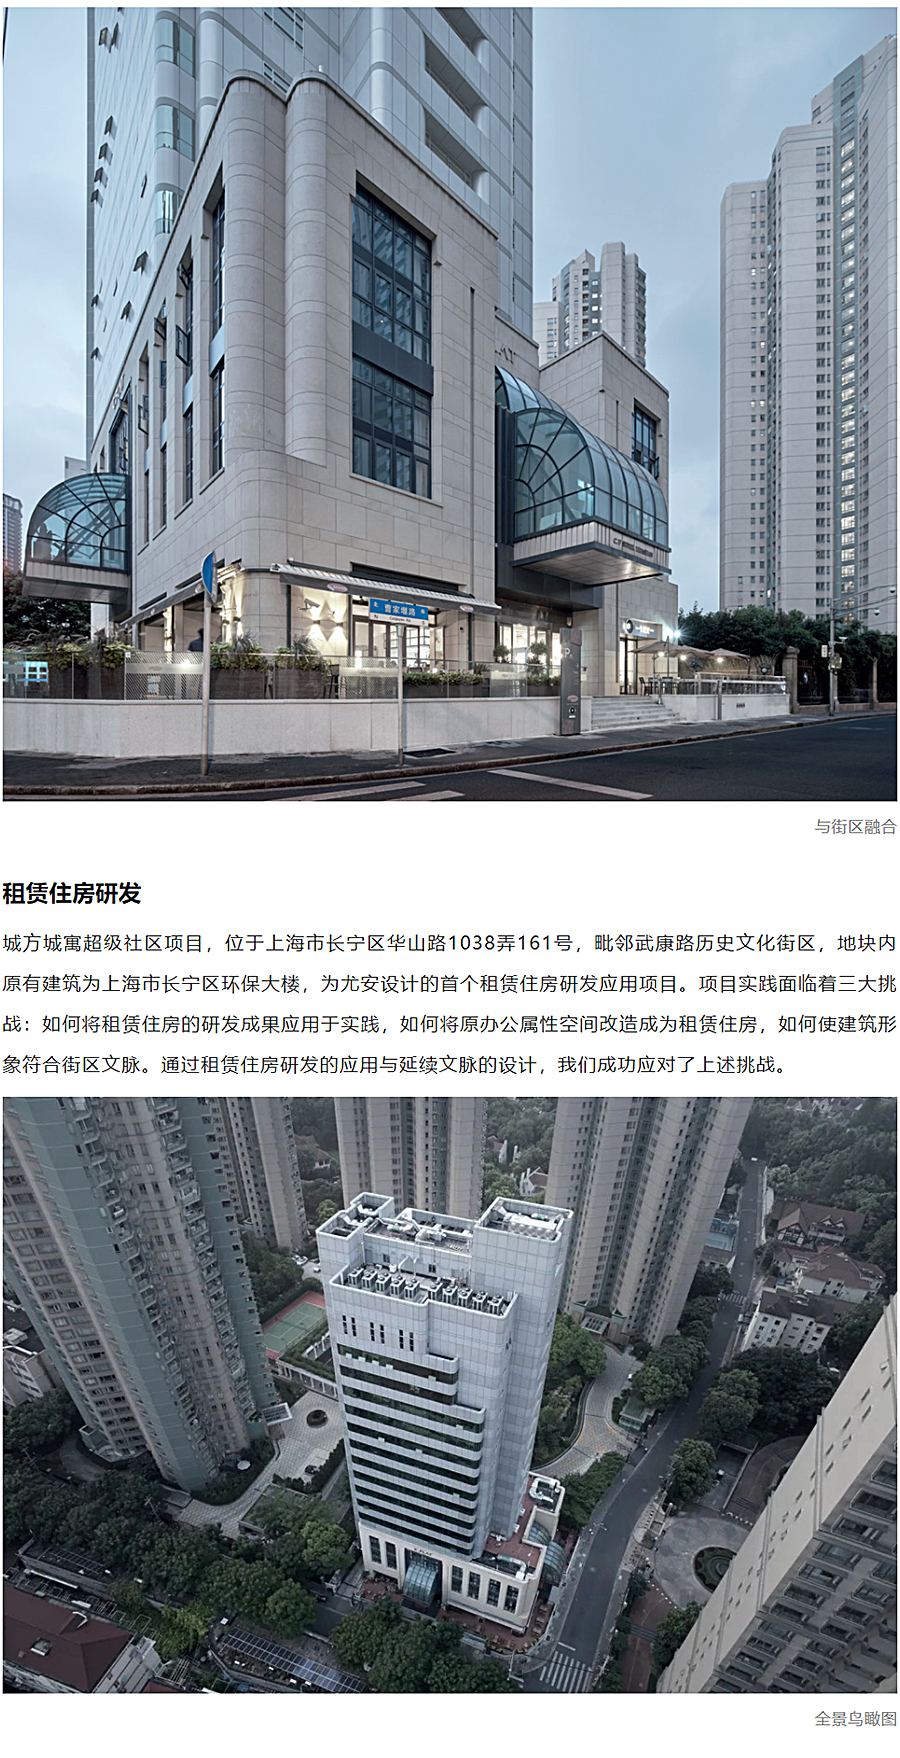 上海地产-_-城方城寓超级社区华山路店_0002_图层-3.jpg